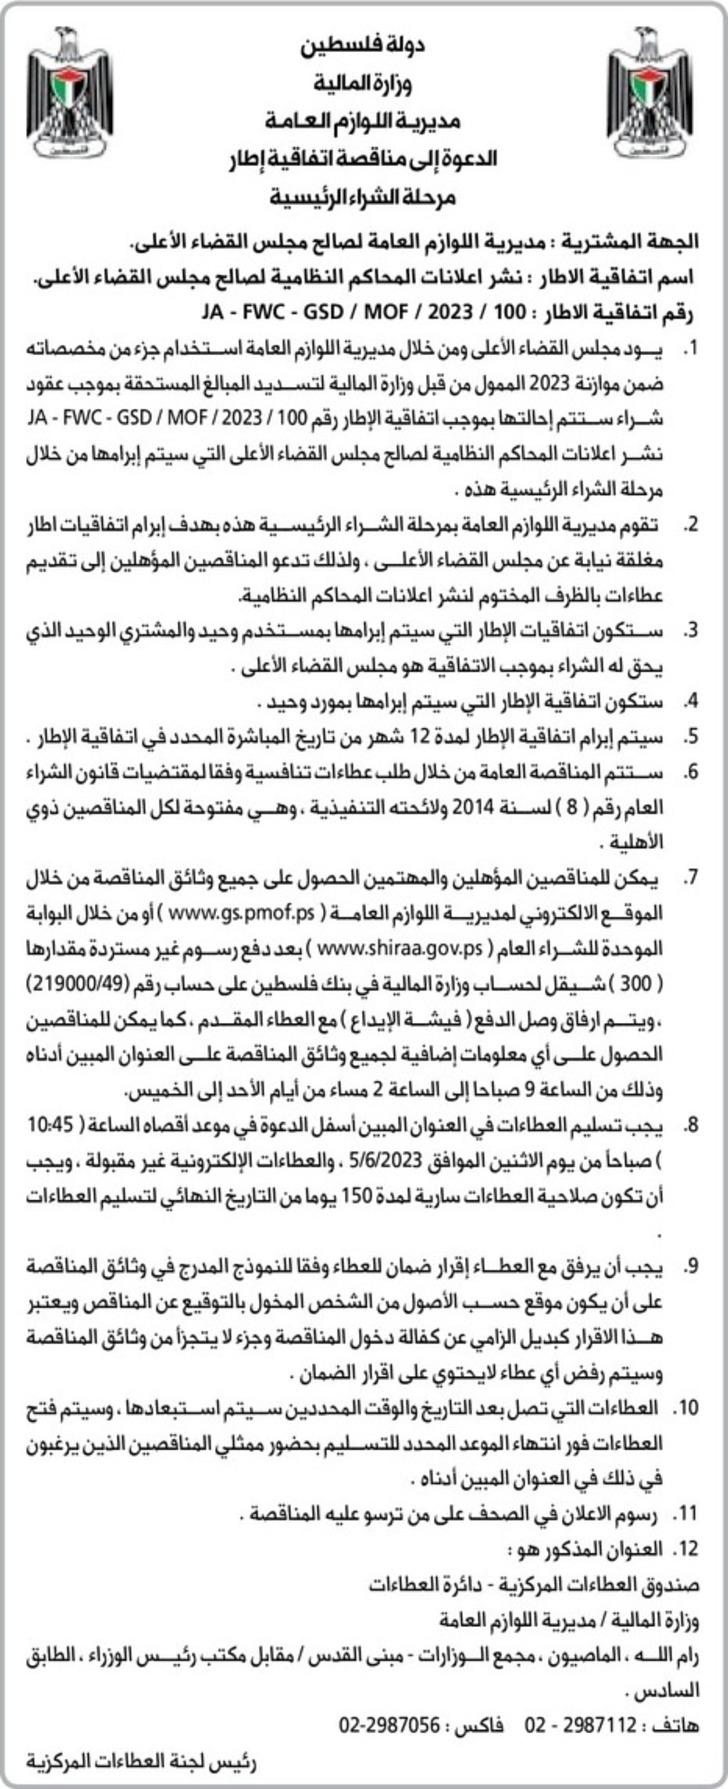  نشر اعلانات المحاكم النظامية لصالح مجلس القضاء الأعلى 